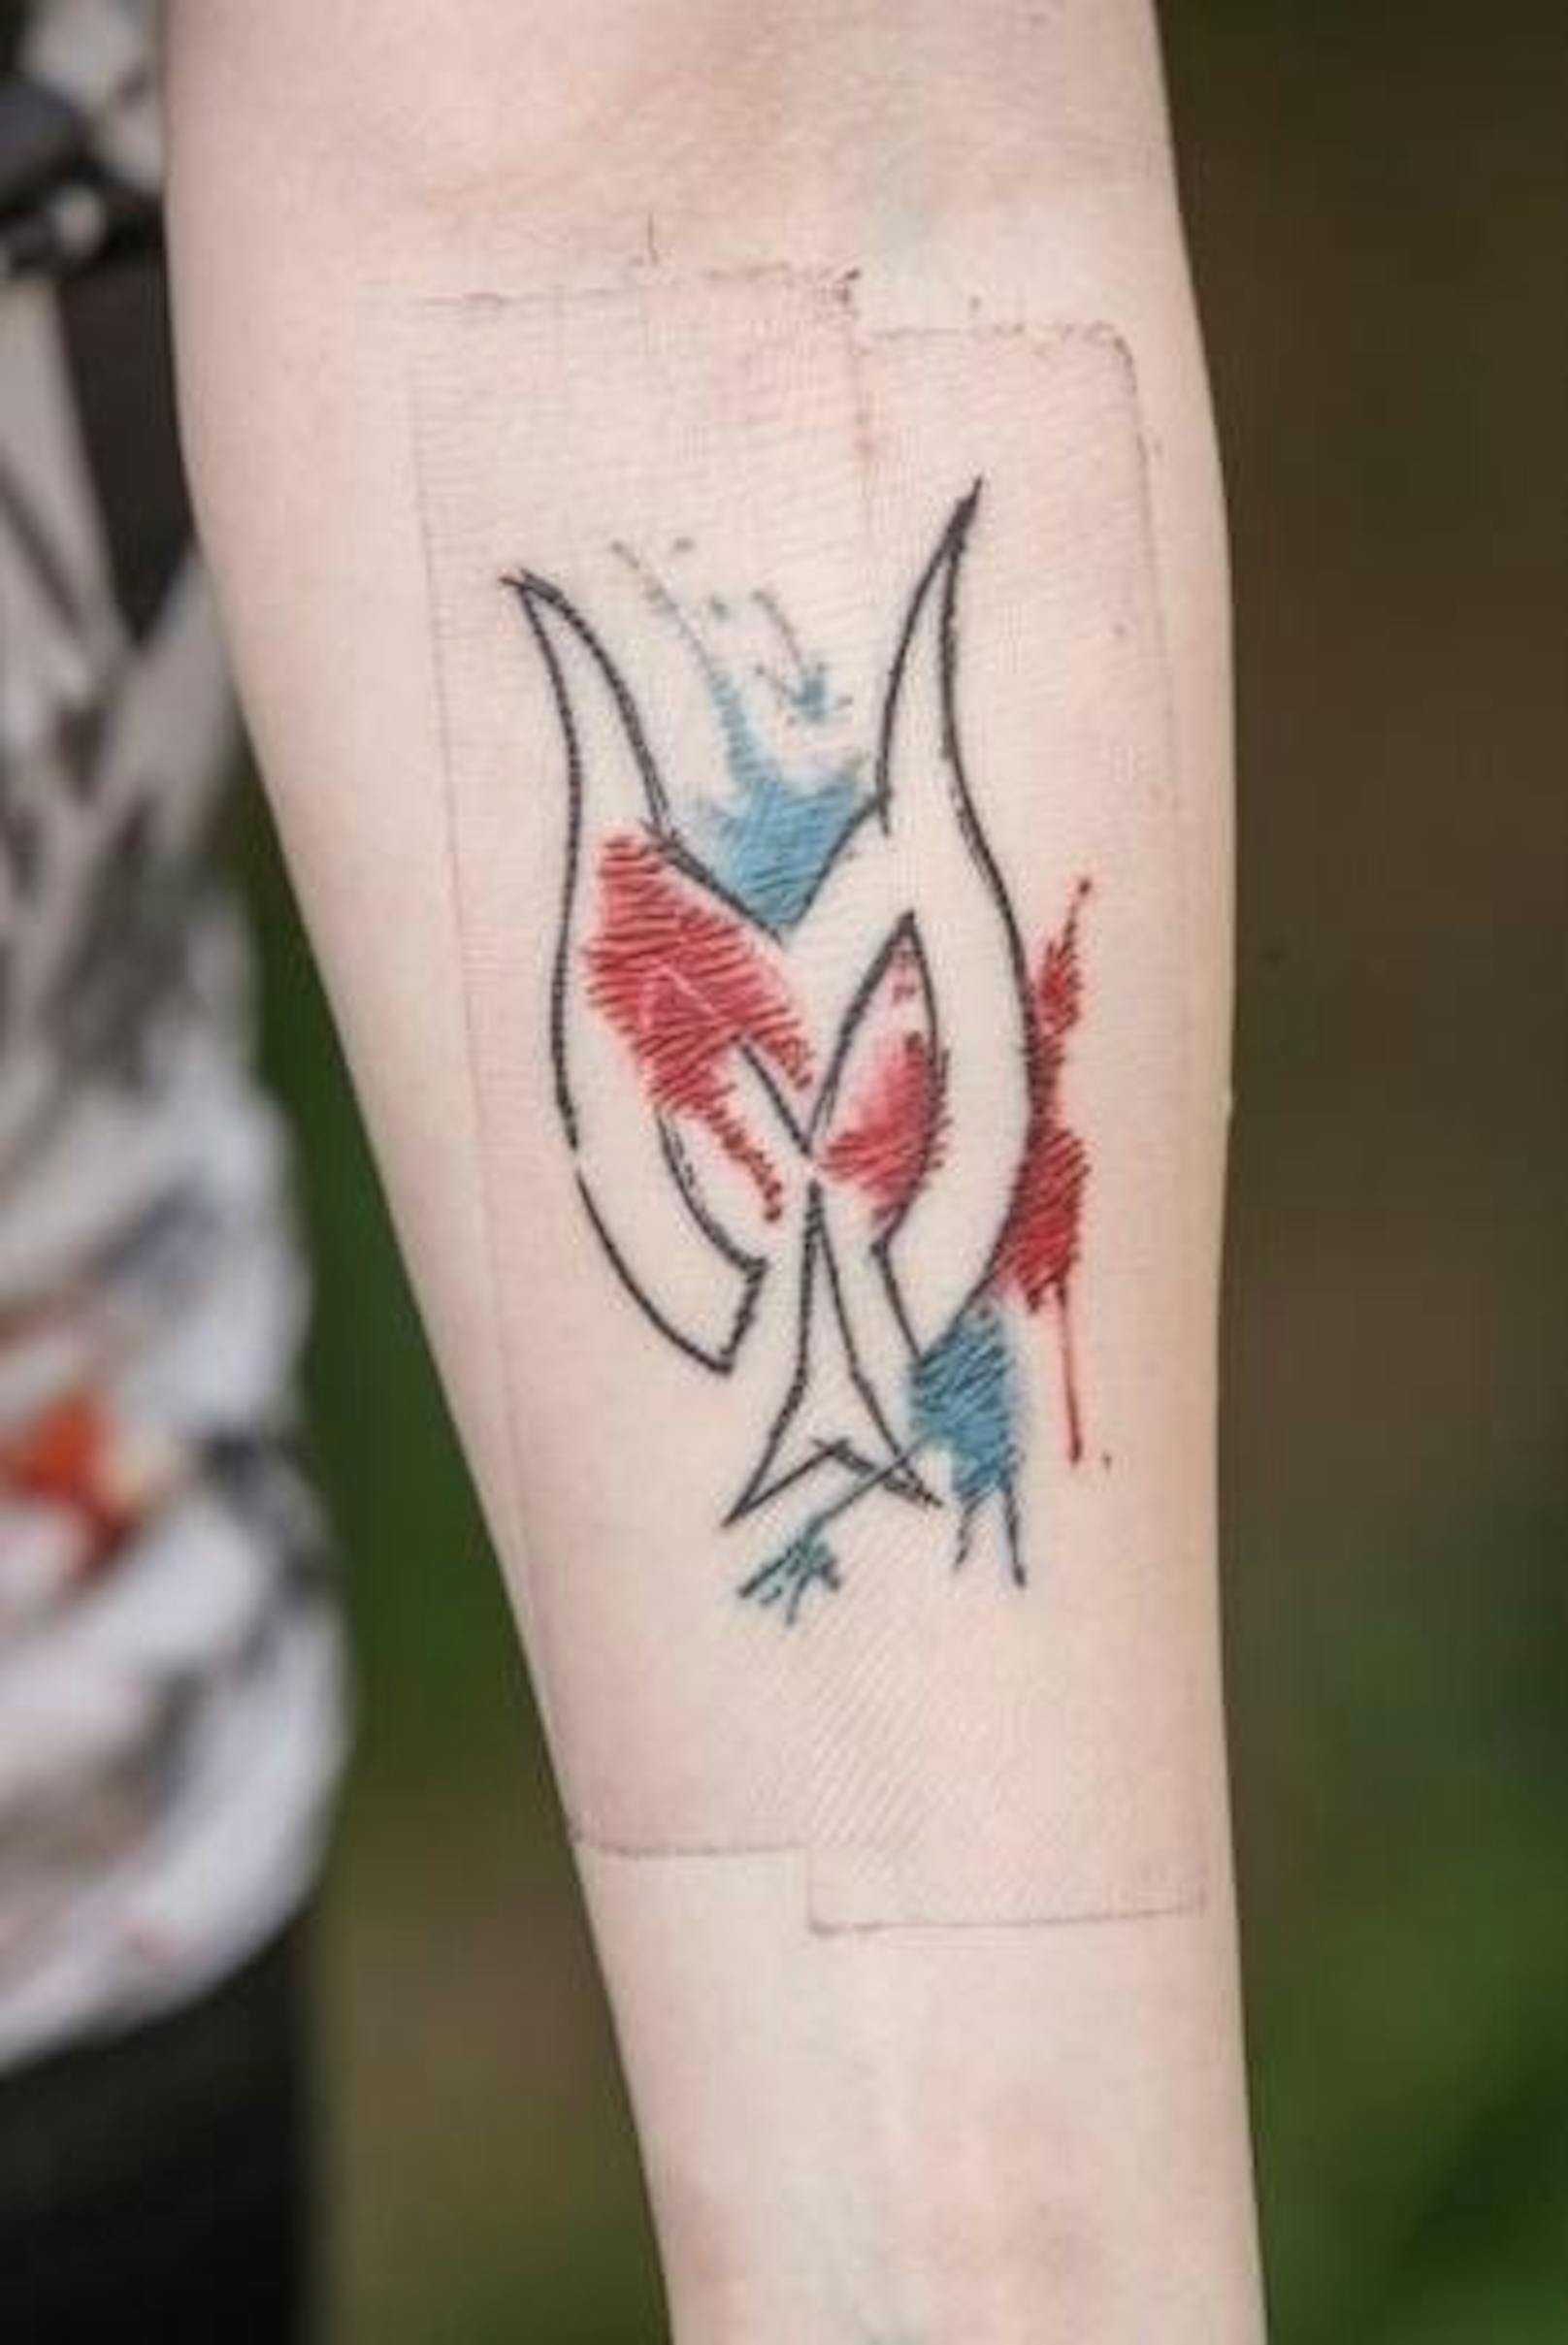 Fan-Liebe für die Ewigkeit - Ferschin zeigt ihr Hirscher-Tattoo: "Es hat schon weh getan, aber es bleibt ja jetzt für immer dort."